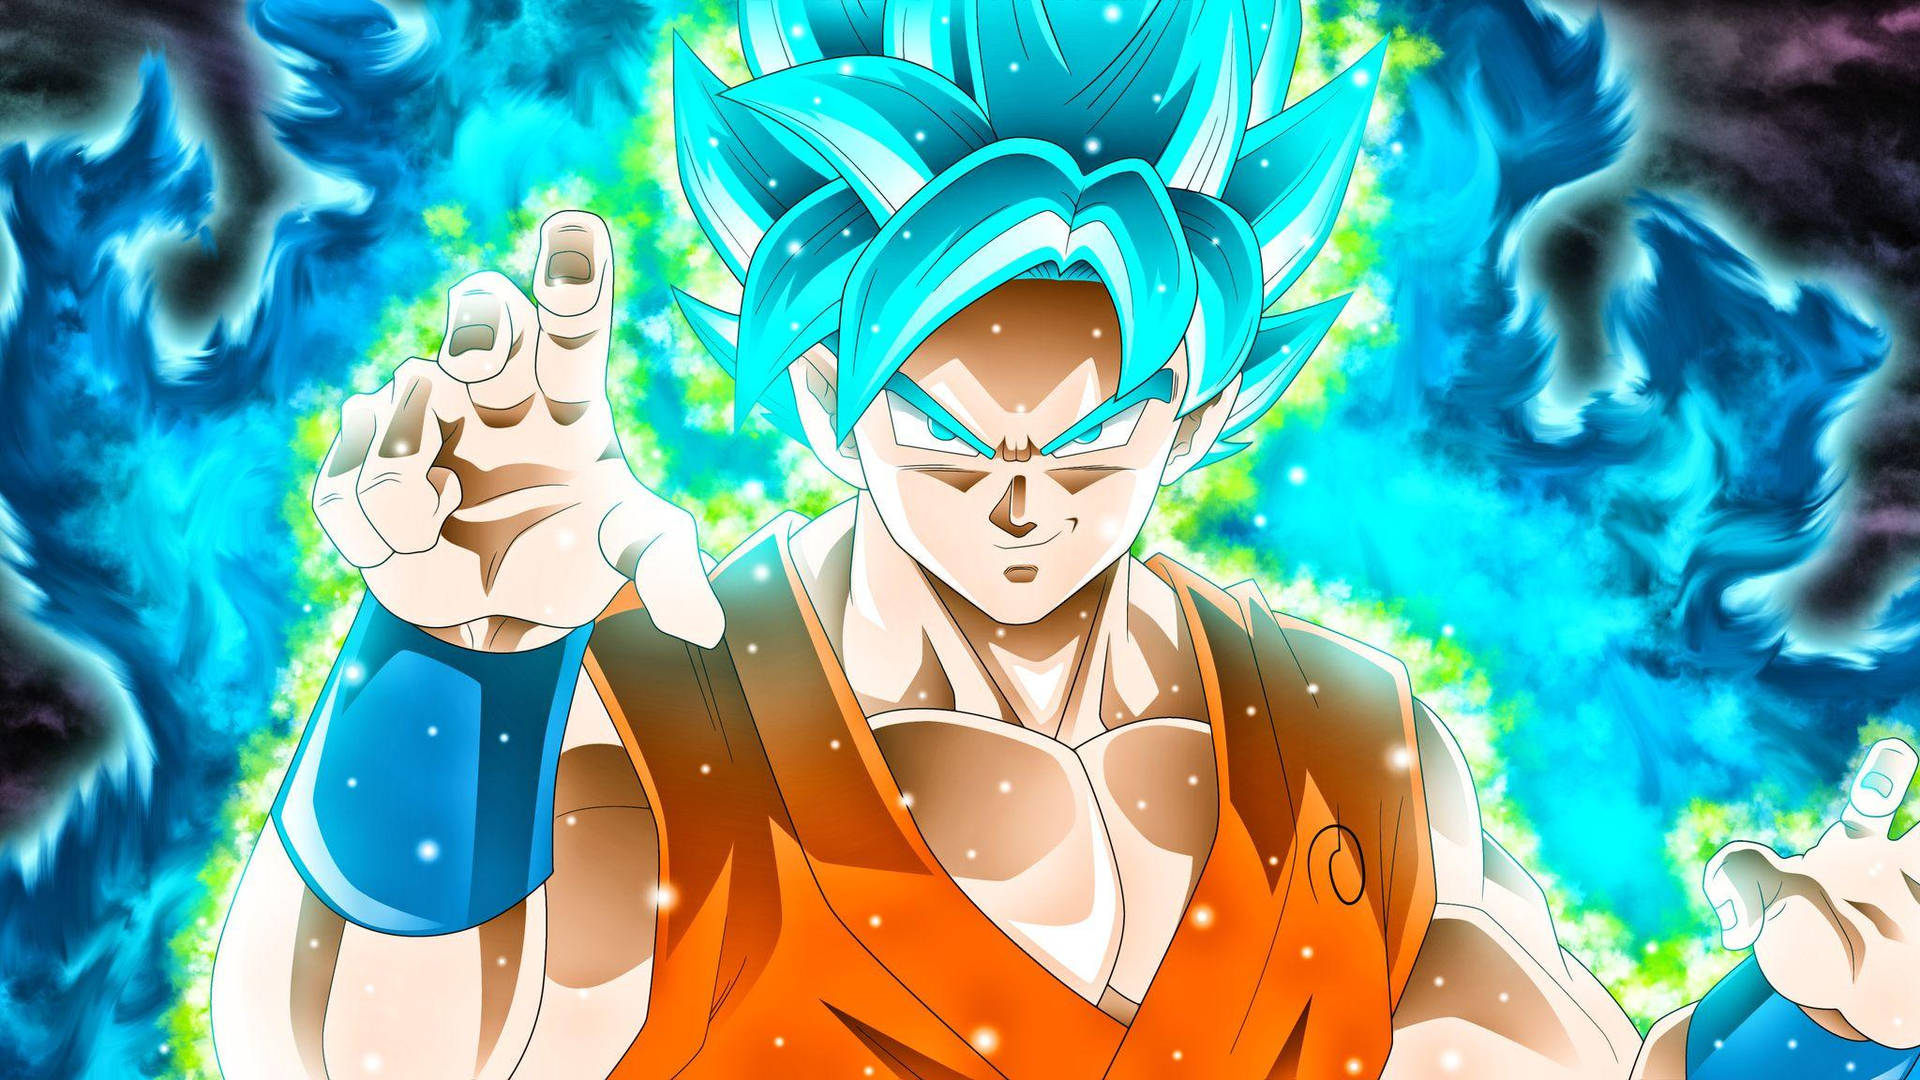 Hãy chiêm ngưỡng bức ảnh Goku Dragon Ball Super wallpaper đầy sức mạnh và khí chất của anh hùng Saiyan này. Với màu sắc nổi bật, chất lượng ảnh tuyệt đẹp và phong cách hoàn hảo, bức ảnh này chắc chắn sẽ khiến bạn say đắm và muốn xem nó lại gang tấc.